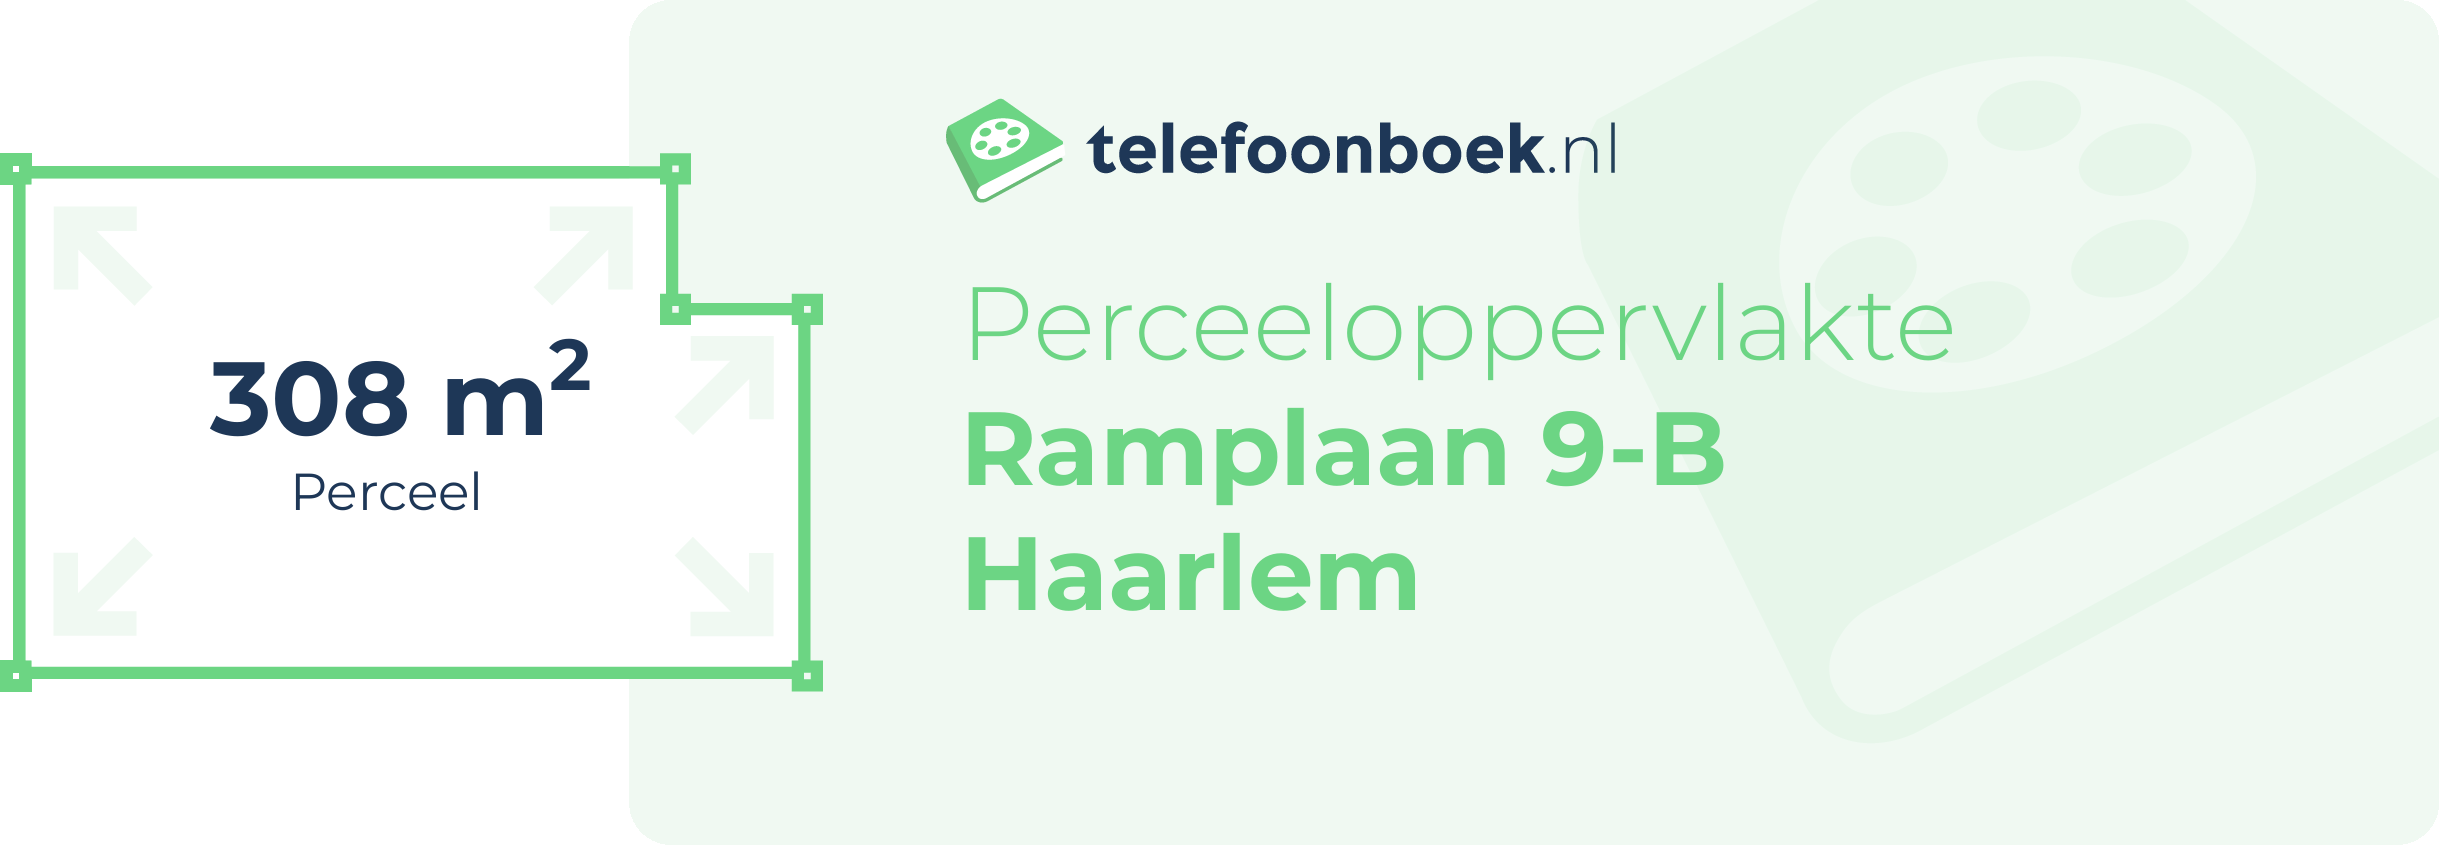 Perceeloppervlakte Ramplaan 9-B Haarlem